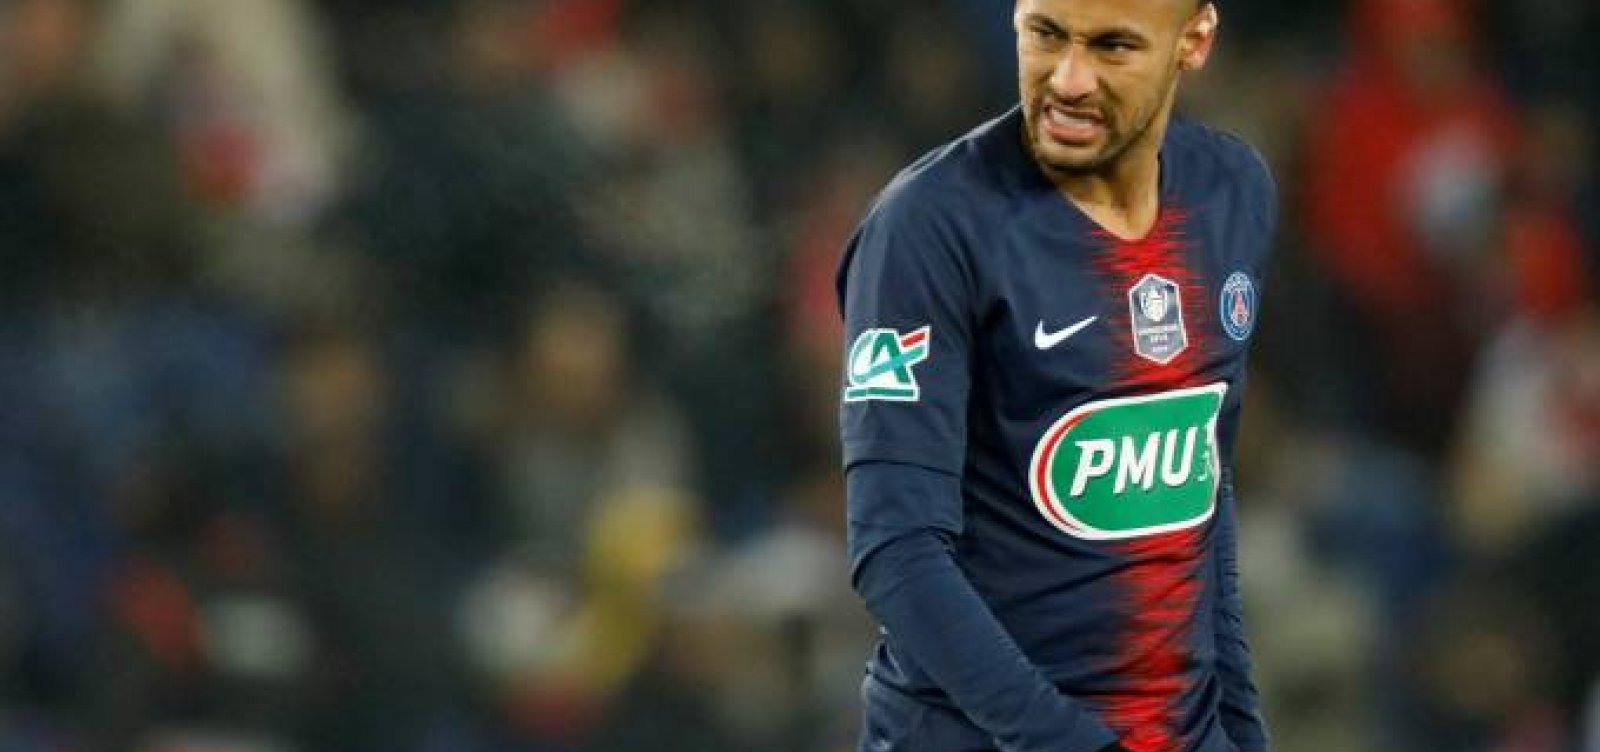 ['NÃ£o quero mais jogar no PSG', diz Neymar a presidente do clube]